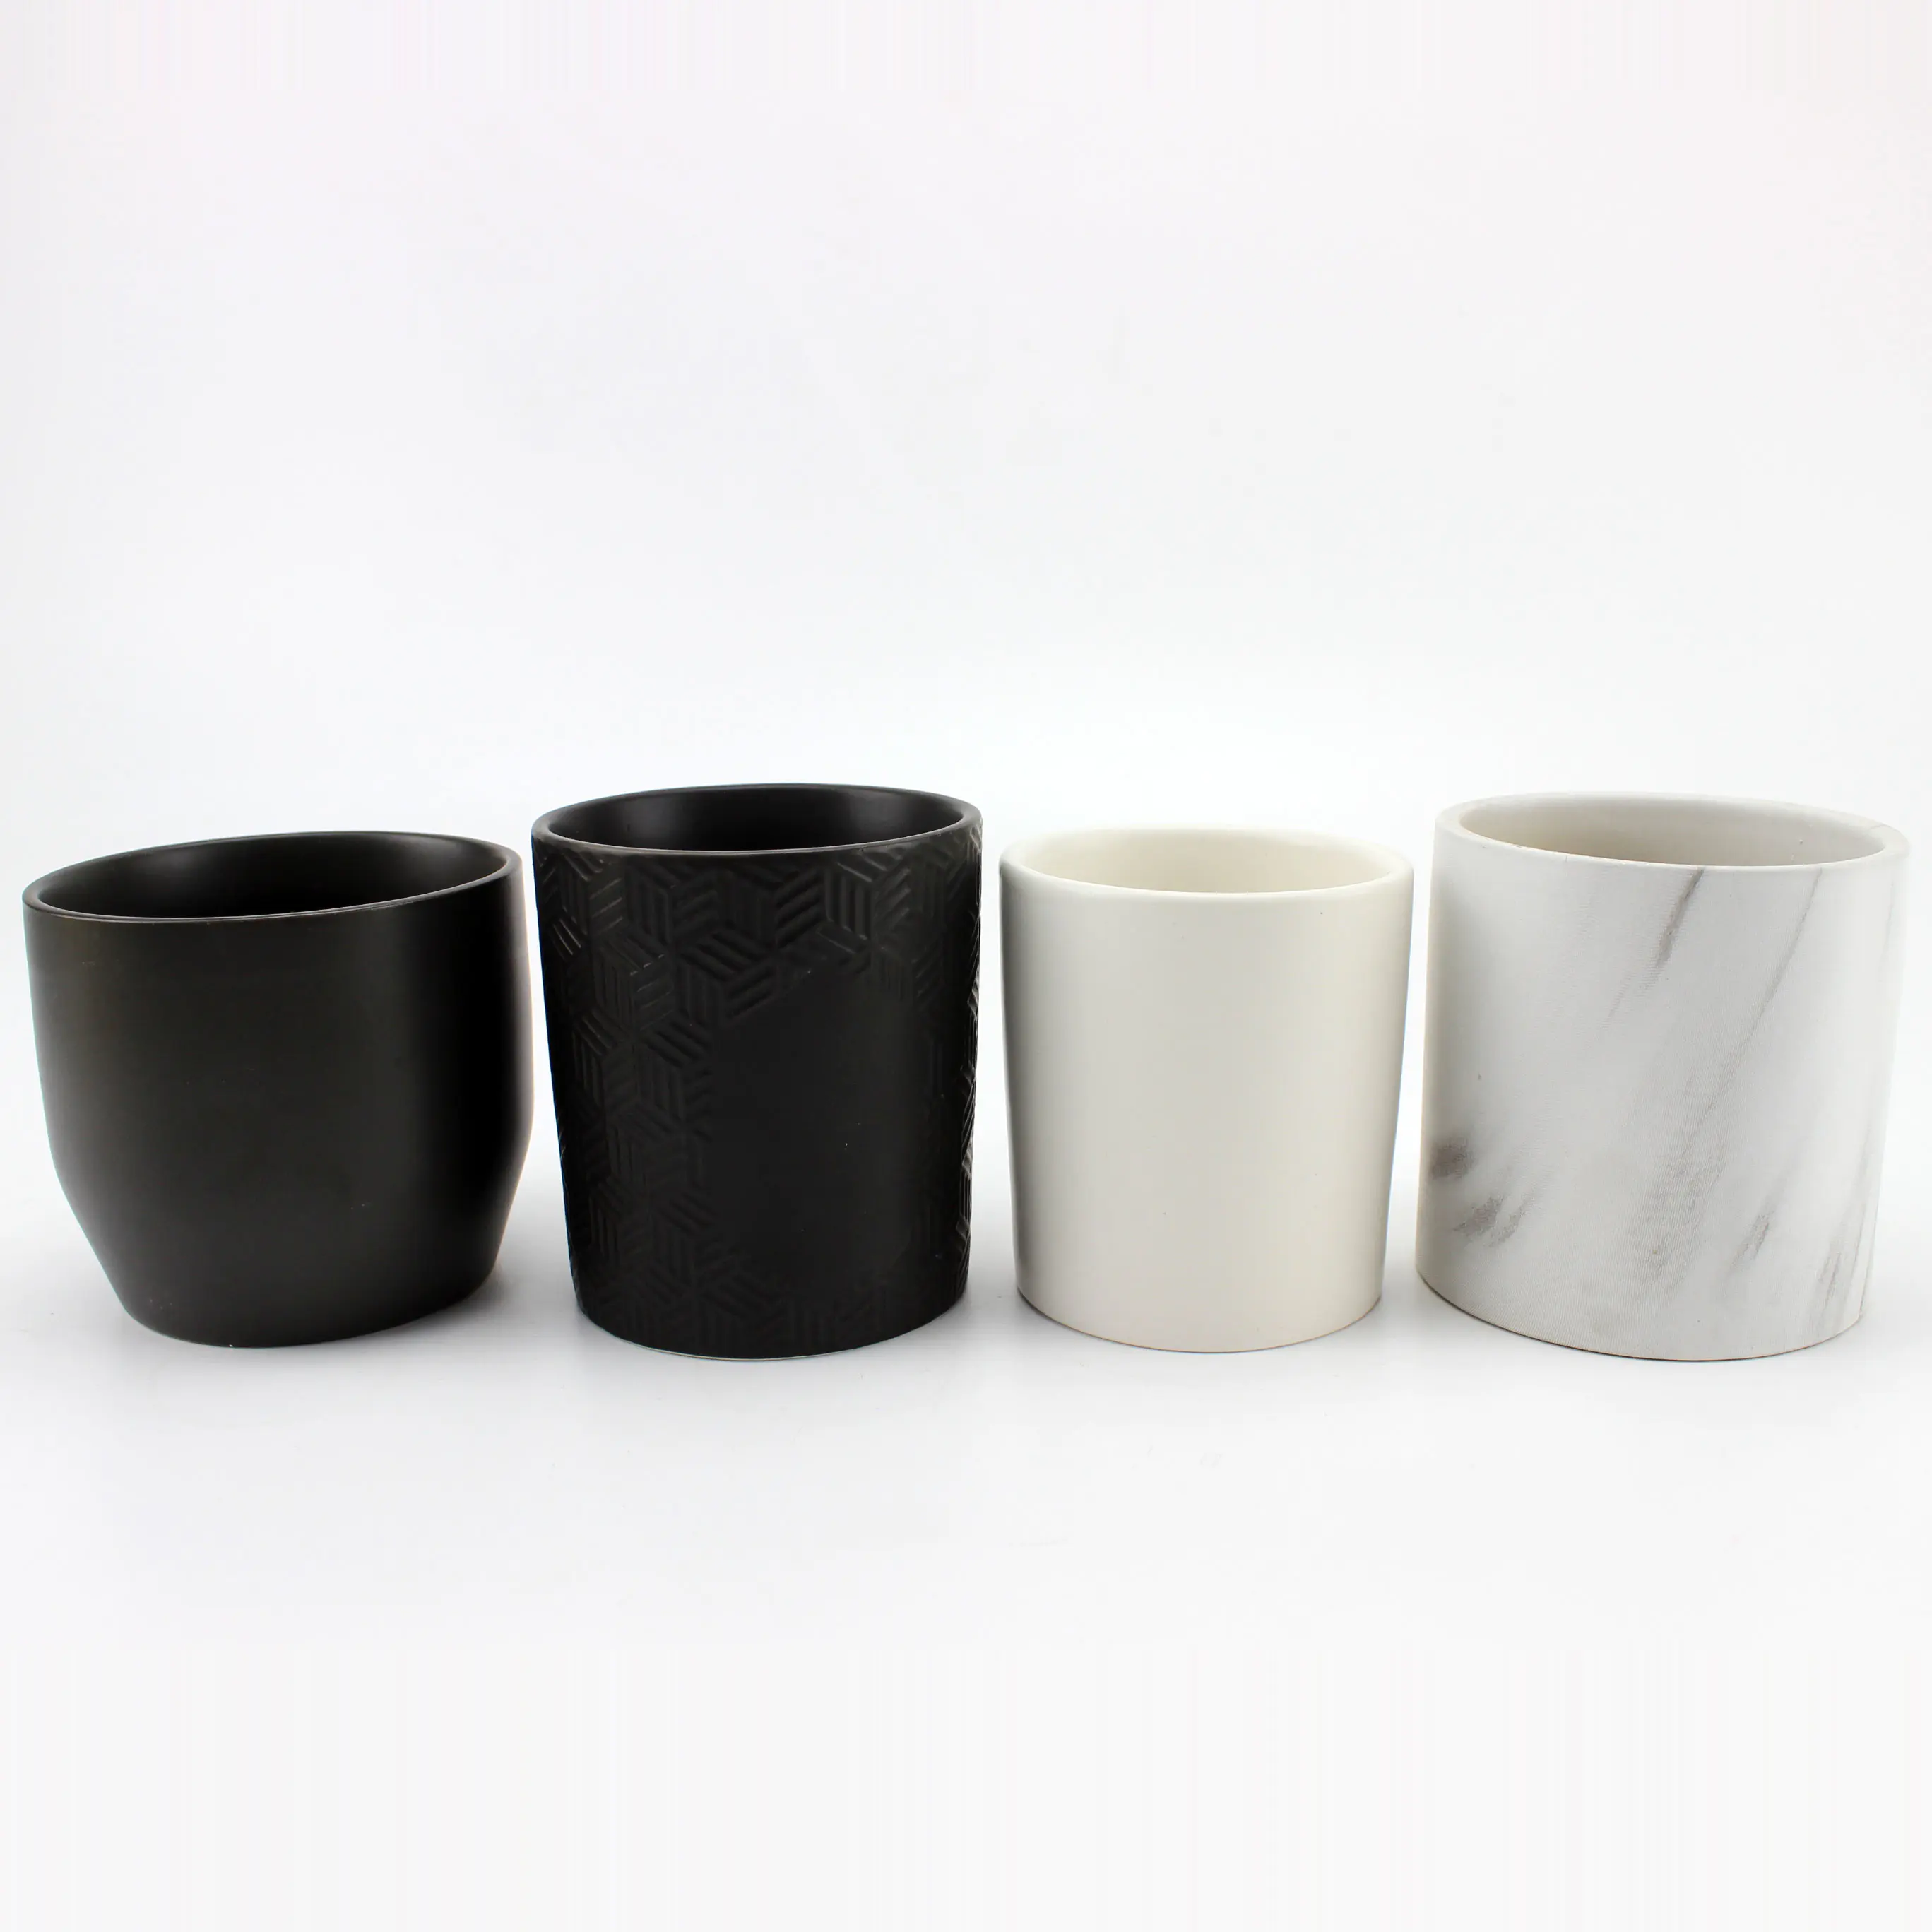 Venta al por mayor única vela de cerámica jarra negra para decoratiom hogar